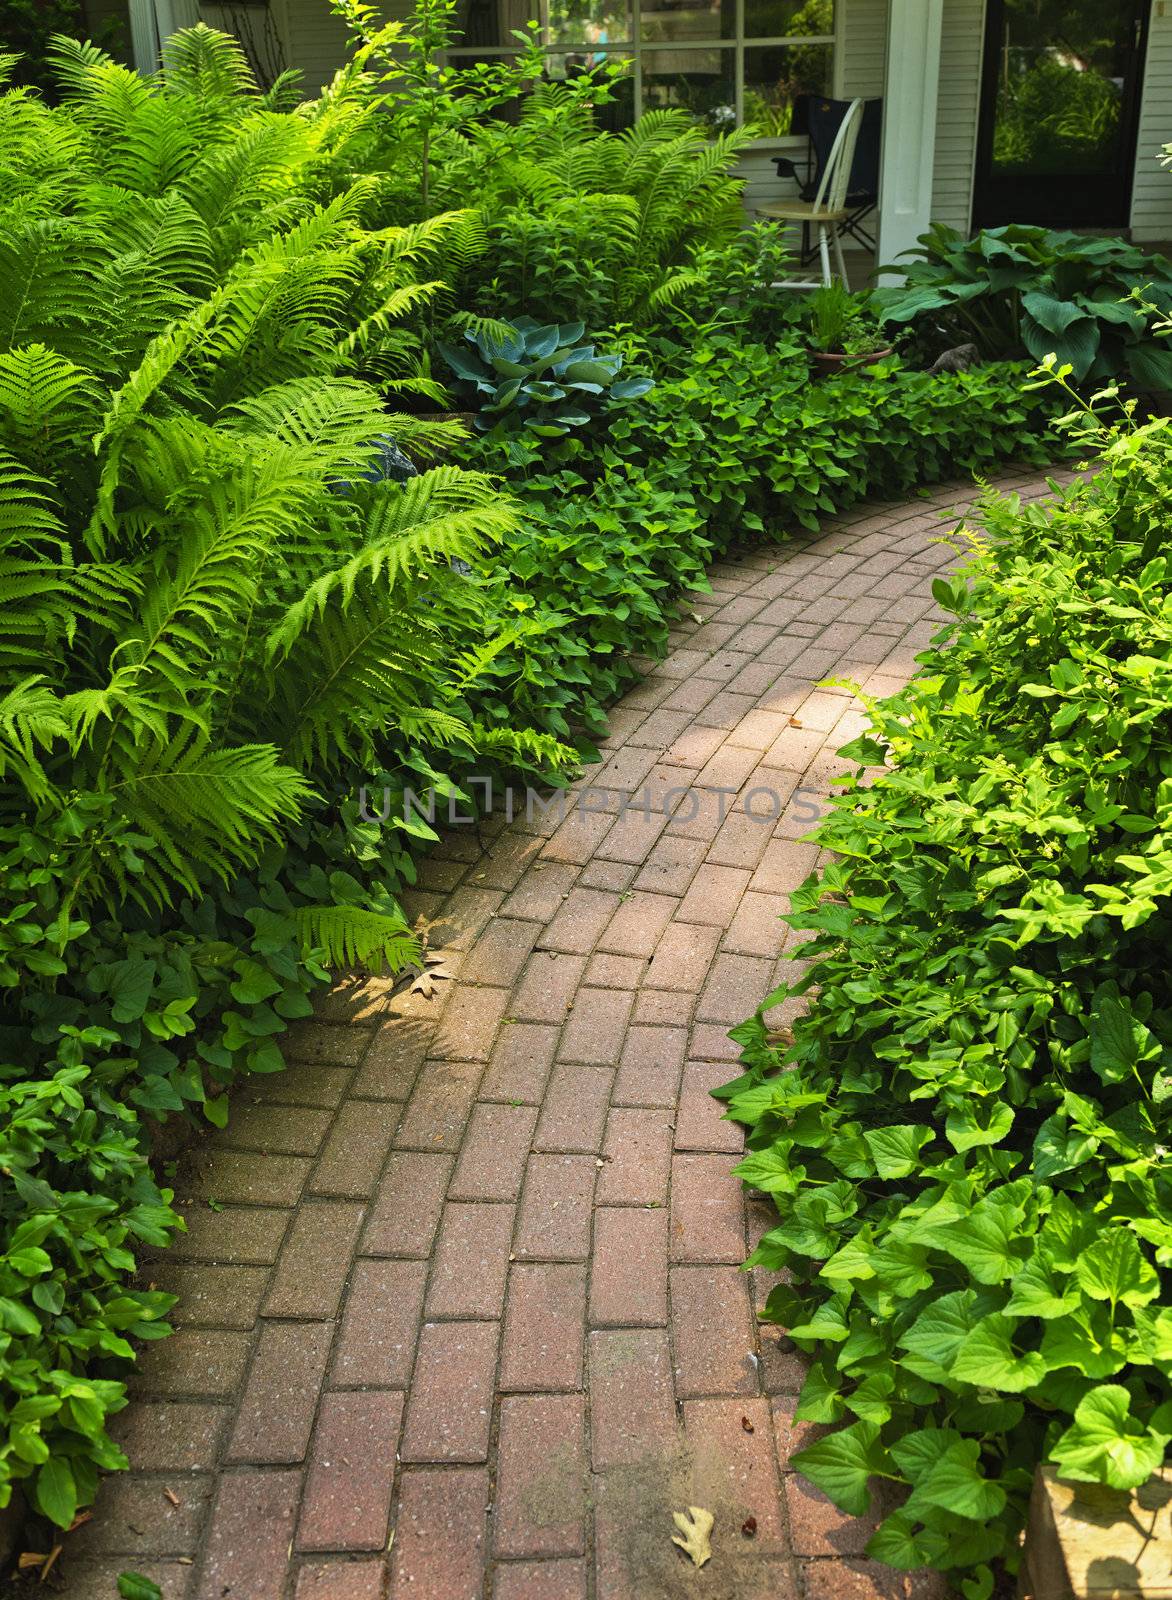 Paved brick path in lush green summer garden